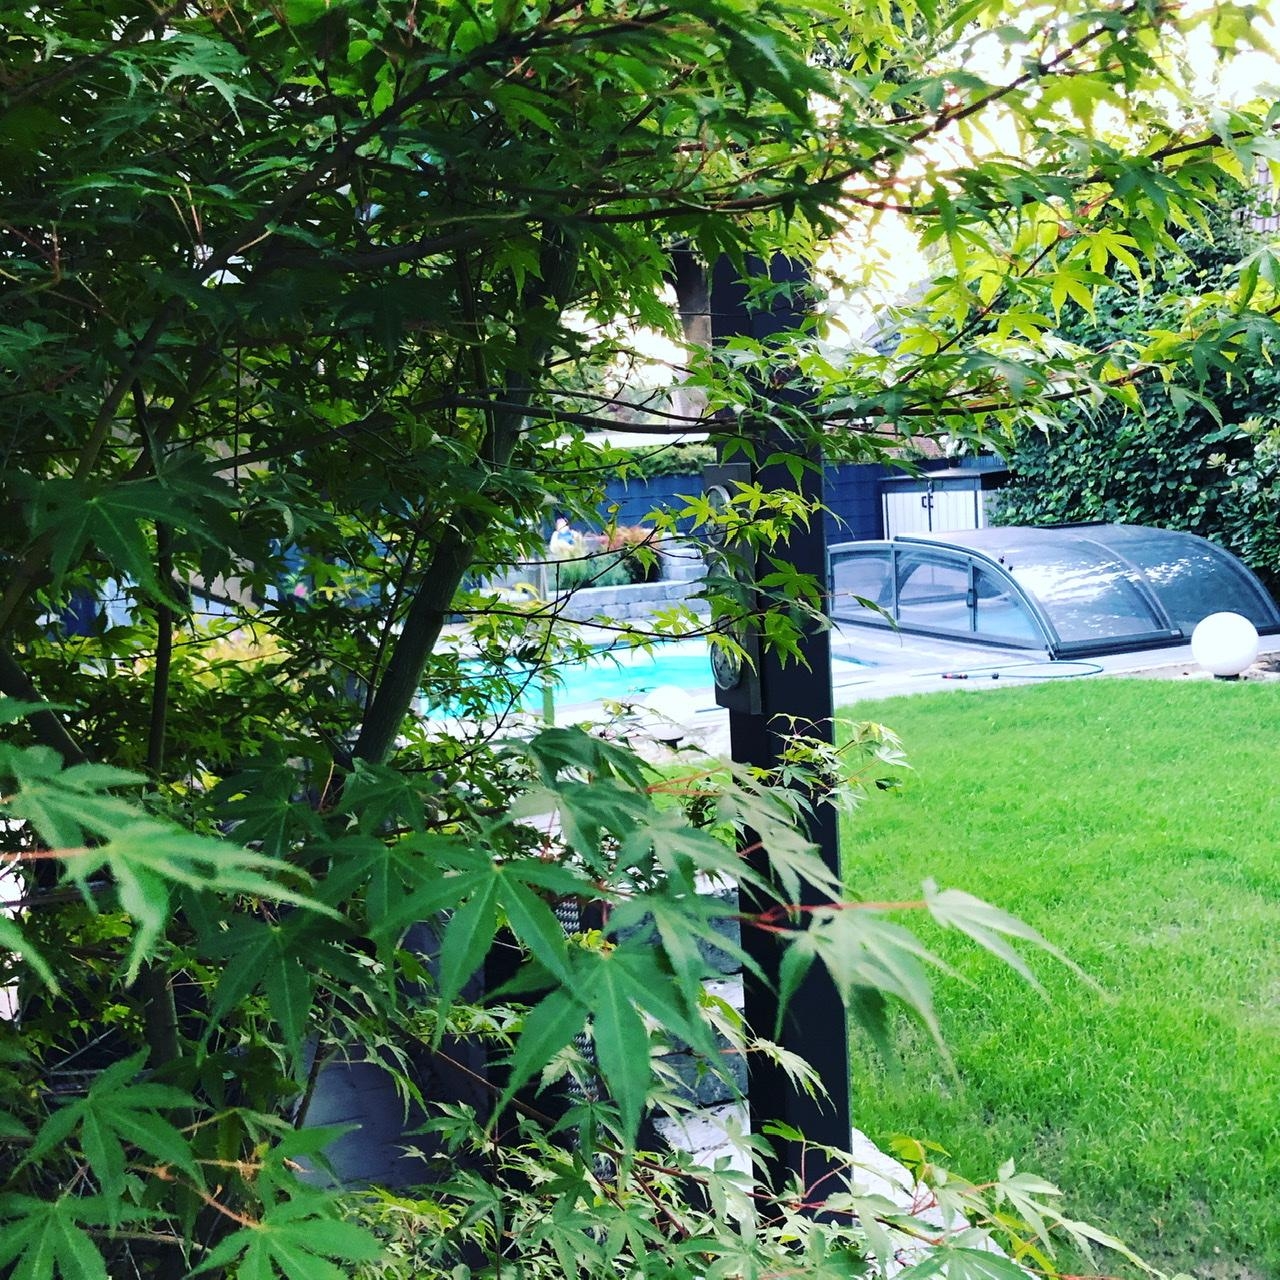 #grüneoase #gartenliebe #pool
Endlich wächst der Rasen wieder ❤️